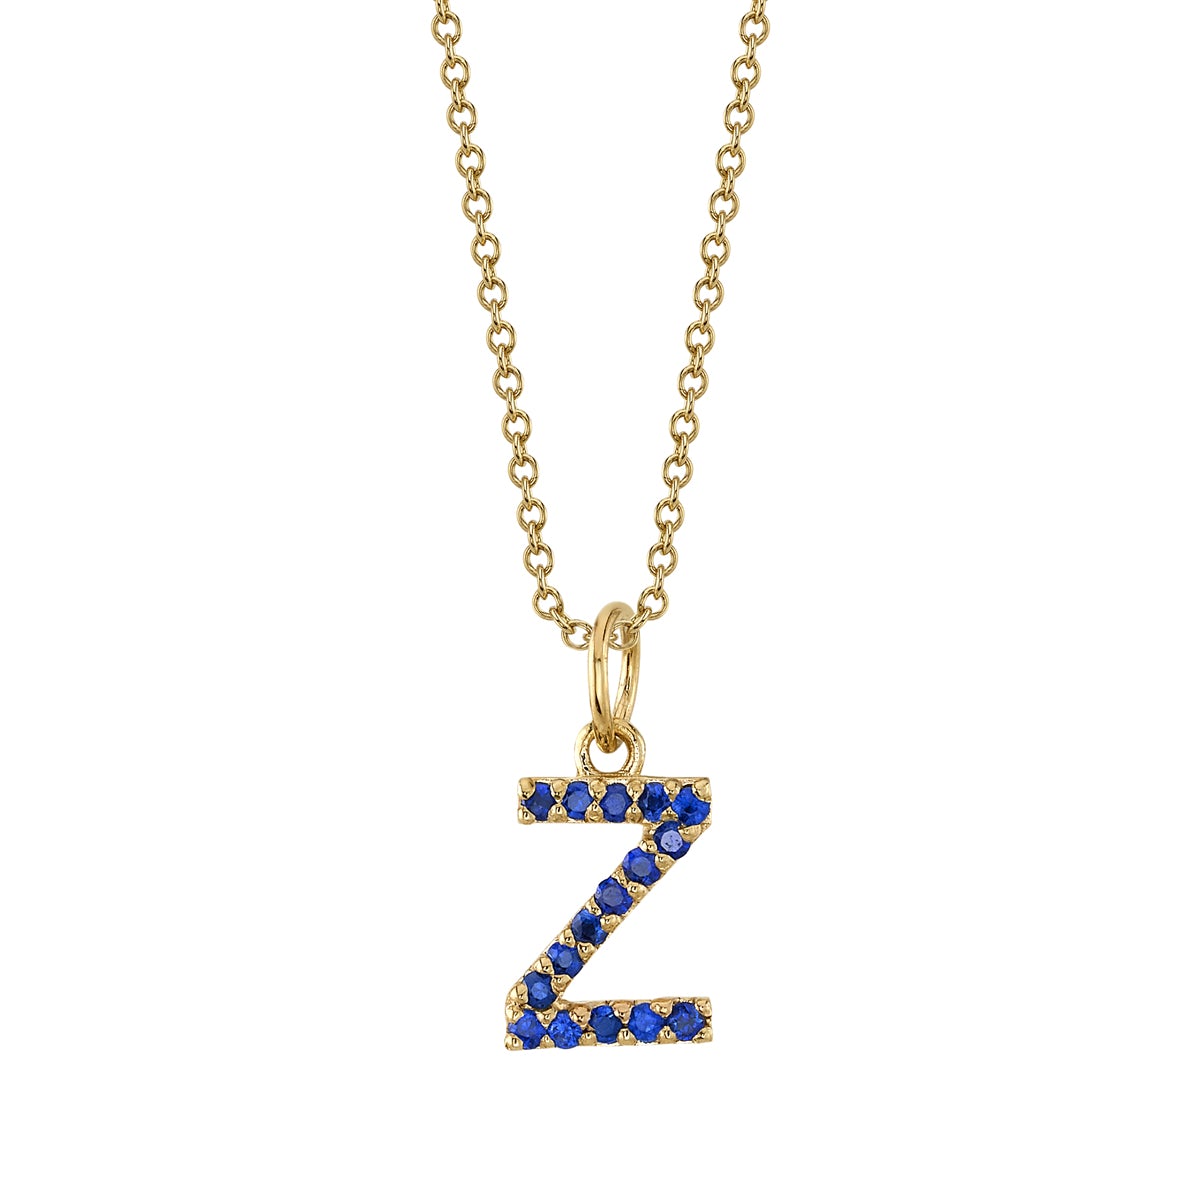 Z Initial Birthstone Charm Necklace